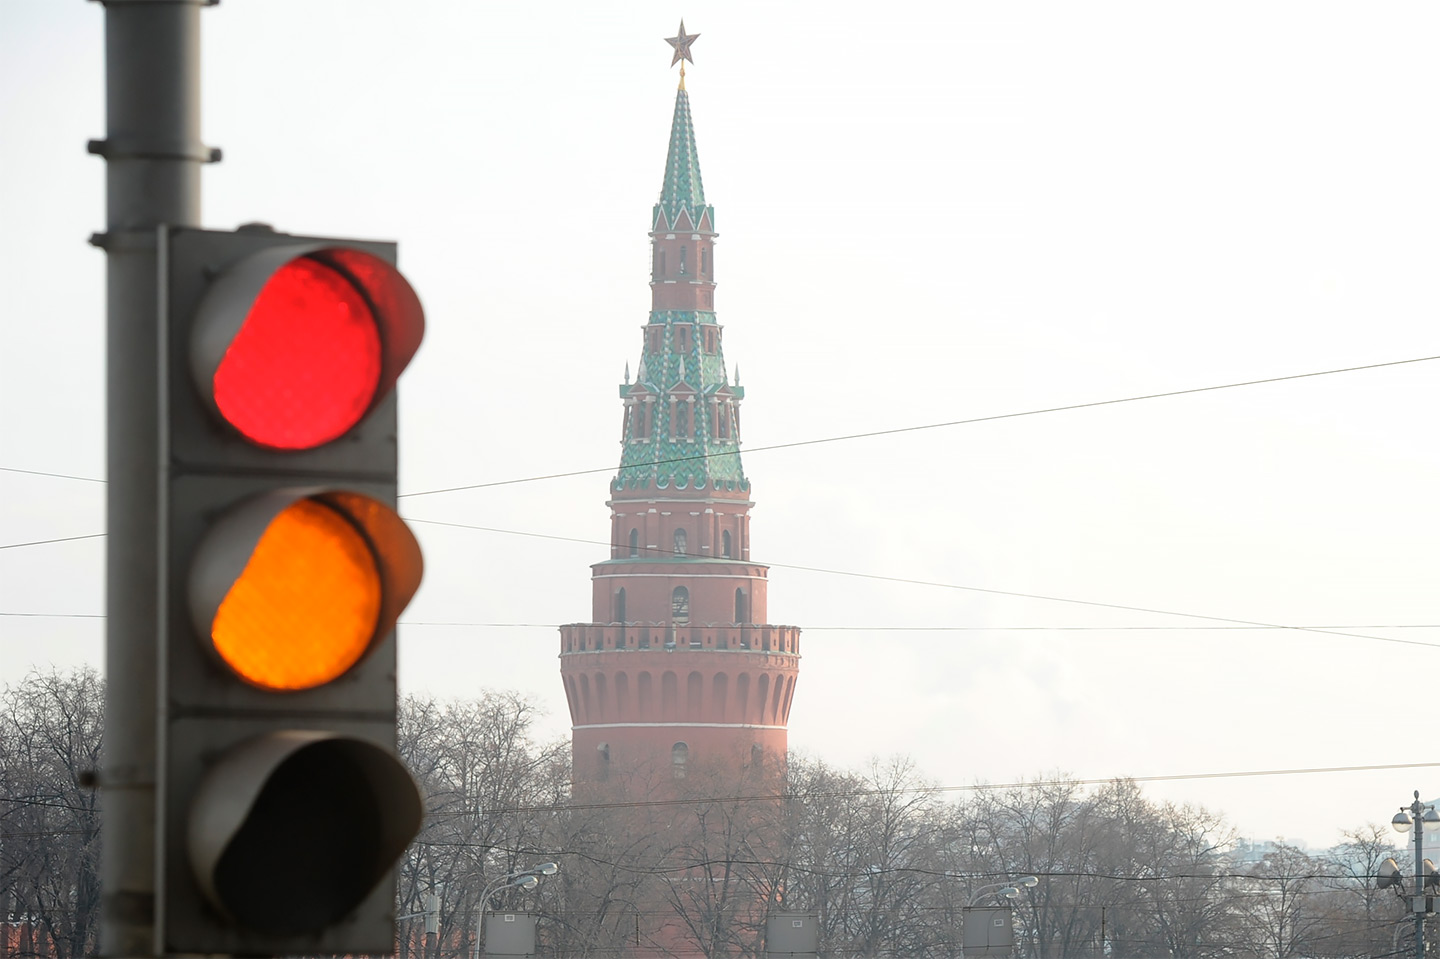 Правила дорожного движения включают два запрещающих движение сигнала светофора: не только красный, но и желтый.